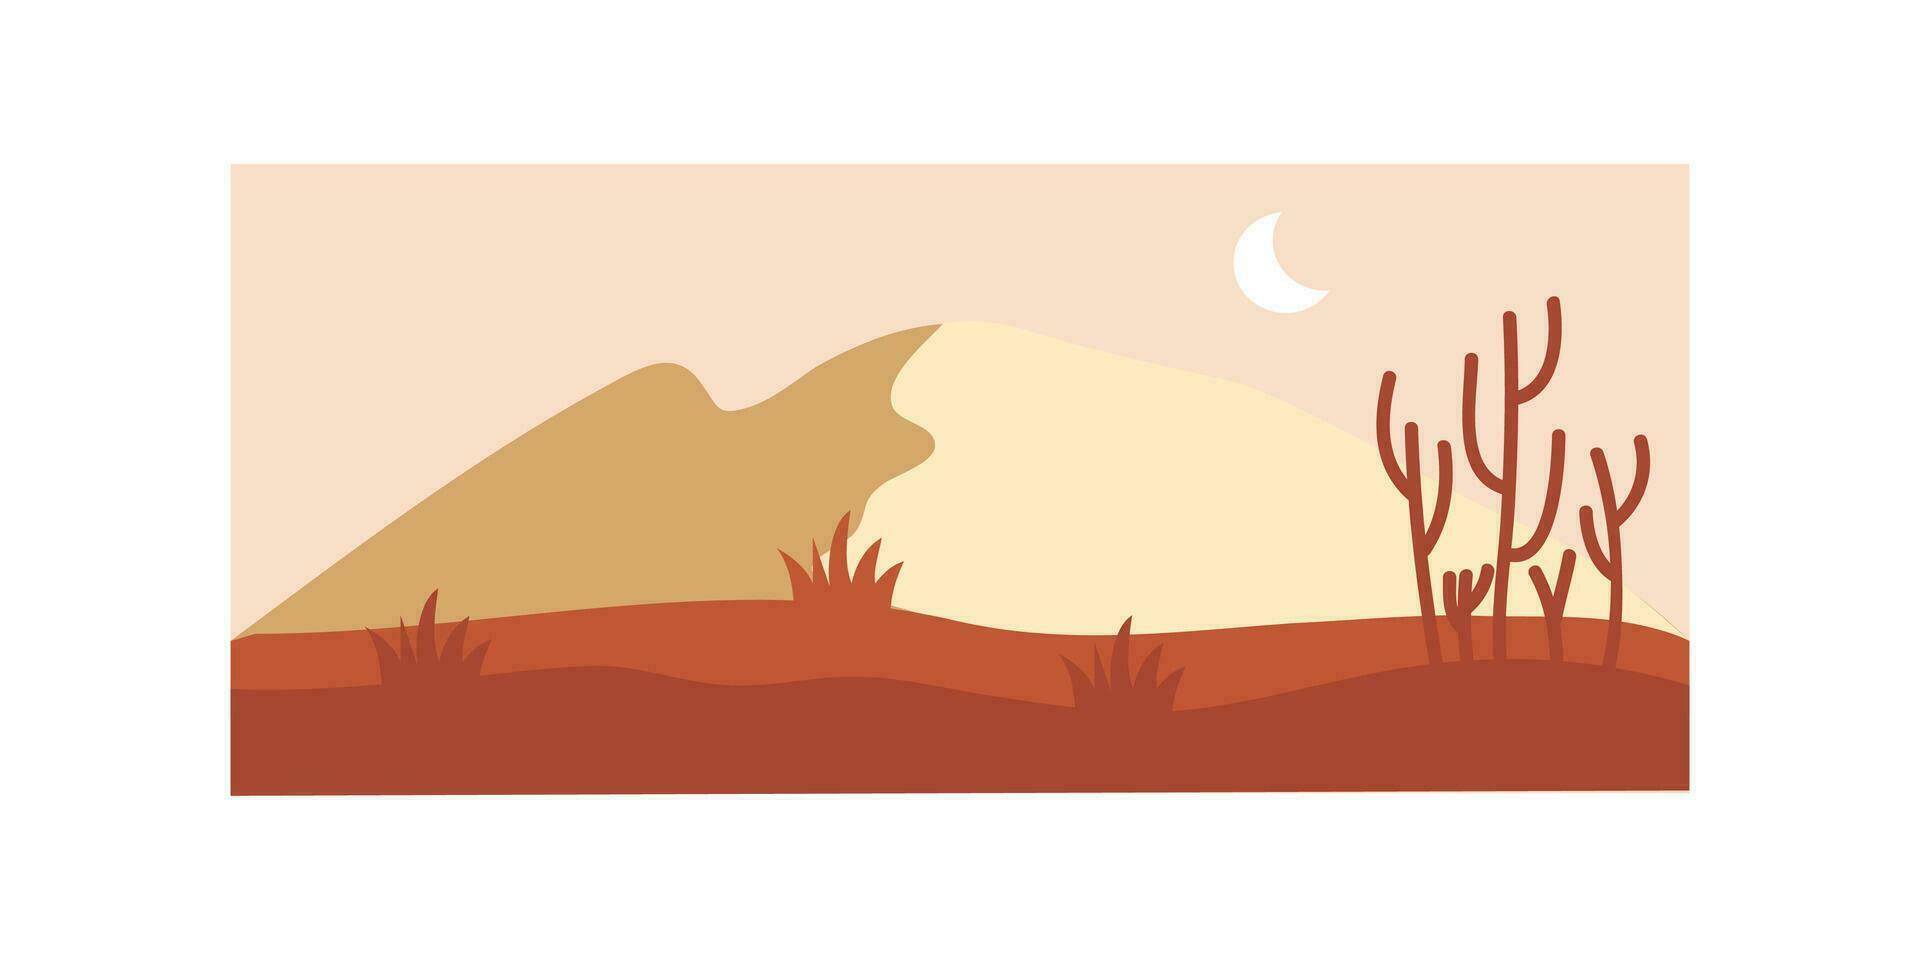 Vektor Illustration von Sonnenuntergang Wüste Landschaft. wild Western Texas Wüste Sonnenuntergang mit Berge und Kaktus im eben Karikatur Stil.